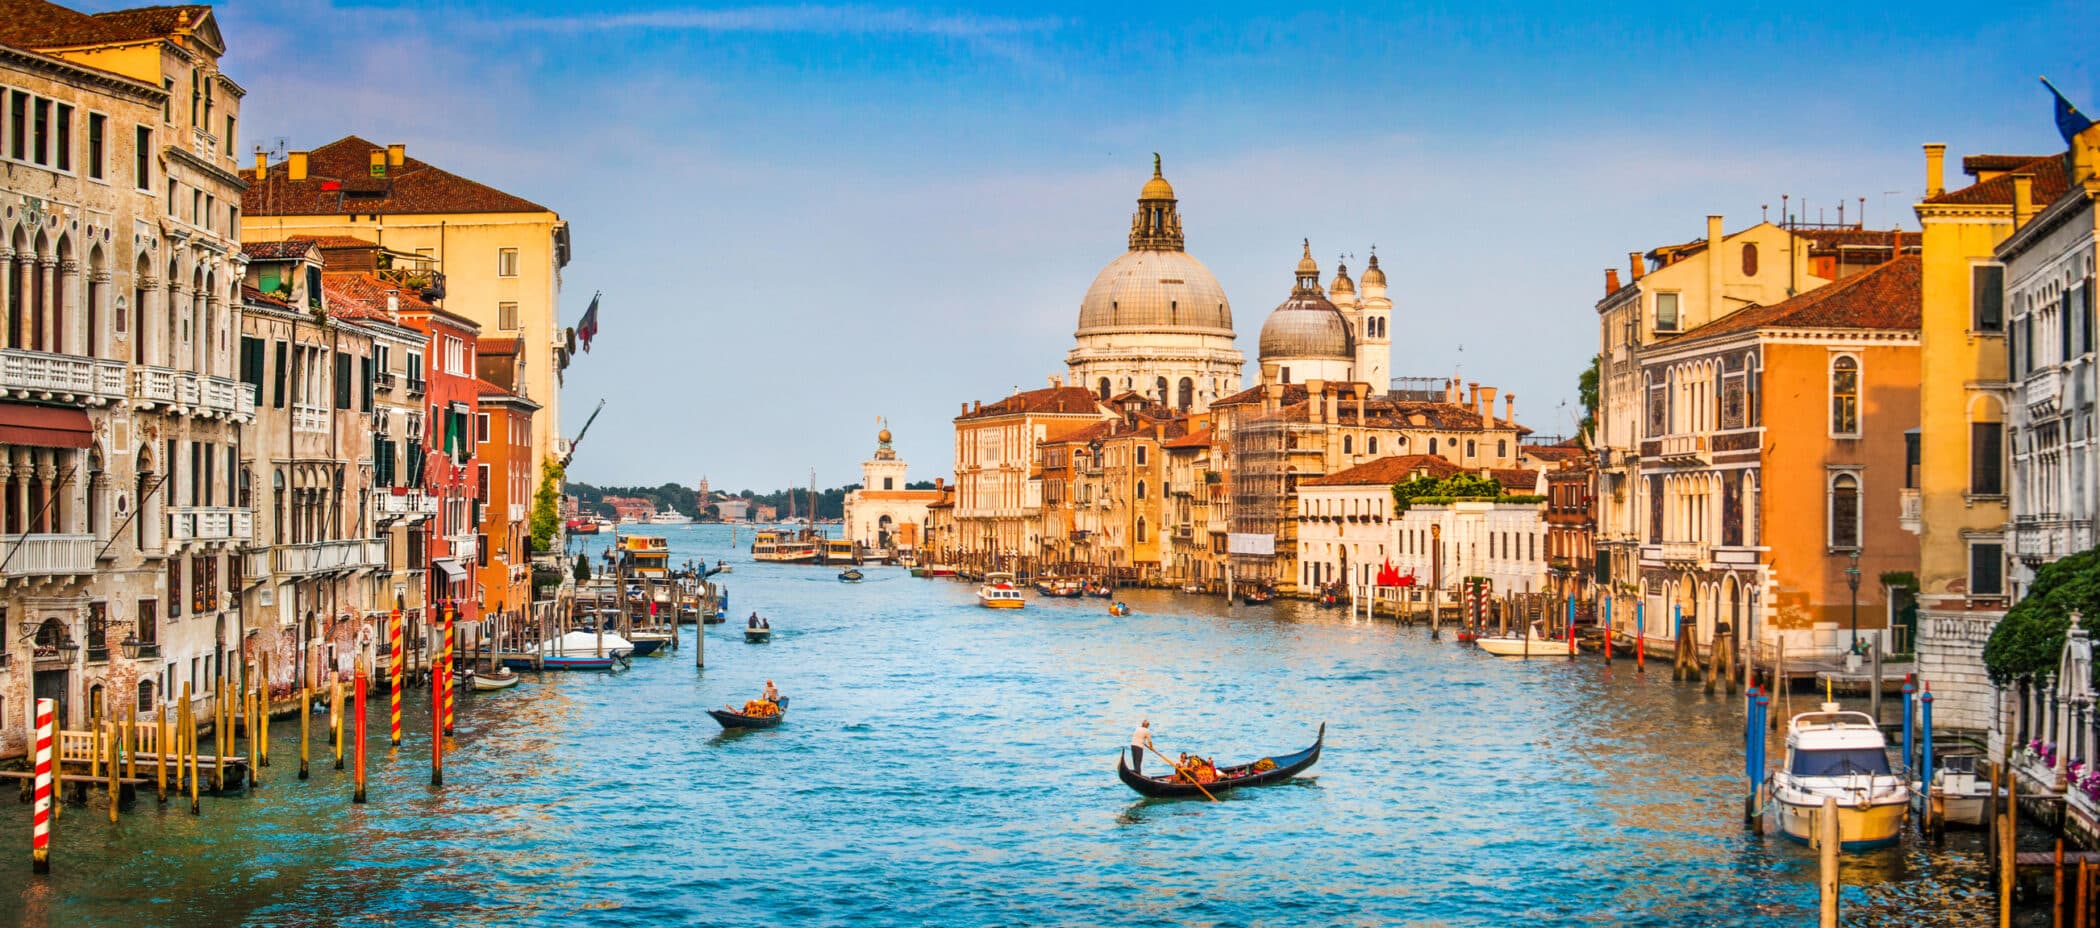 Canal Grande panorama fra Venedig. Romance udtrykkes vel fint med en gondoltur her?